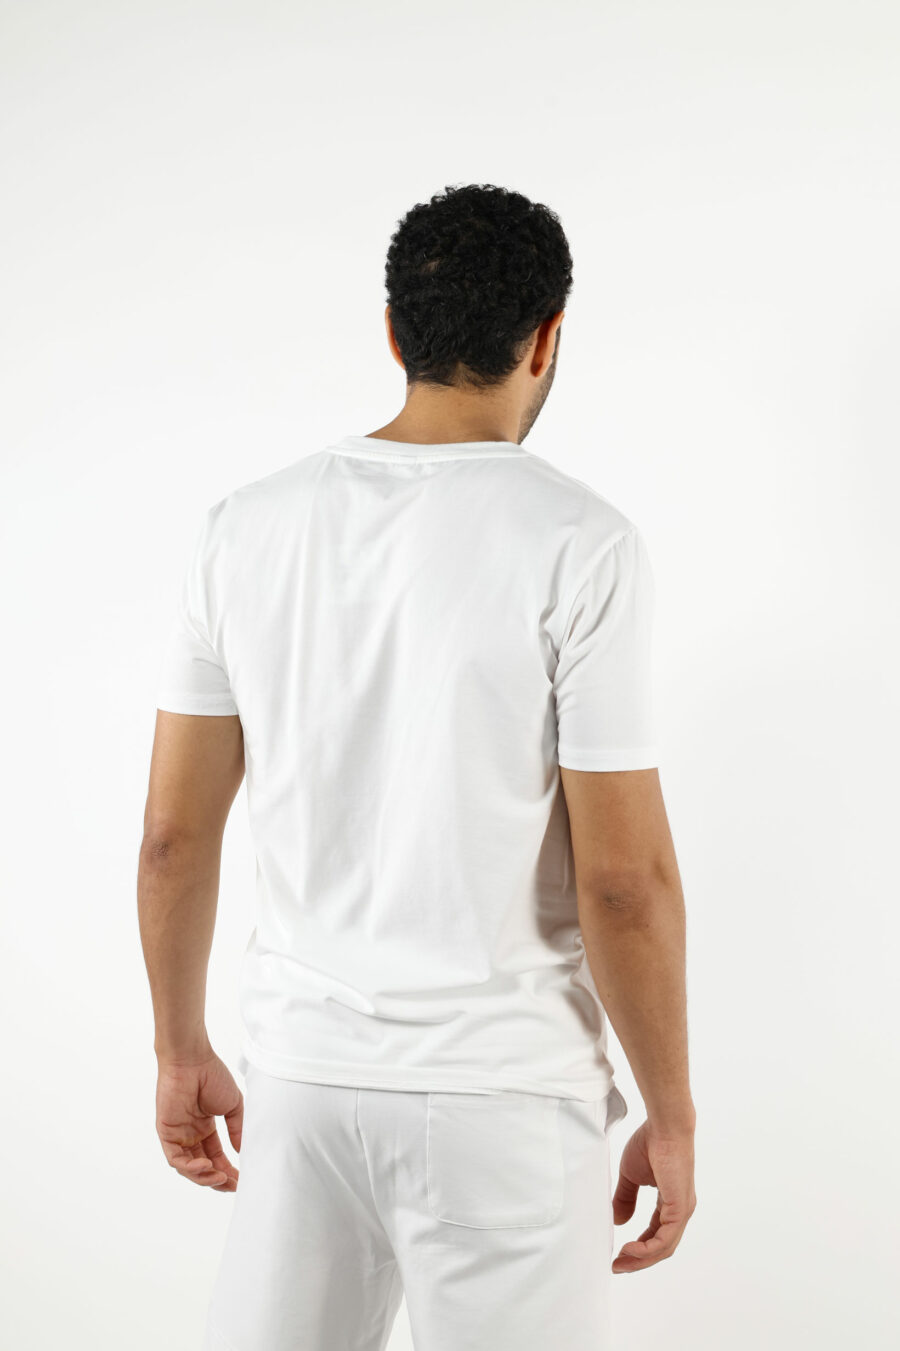 Camiseta blanca con minilogo parche oso "underbear" - 111024